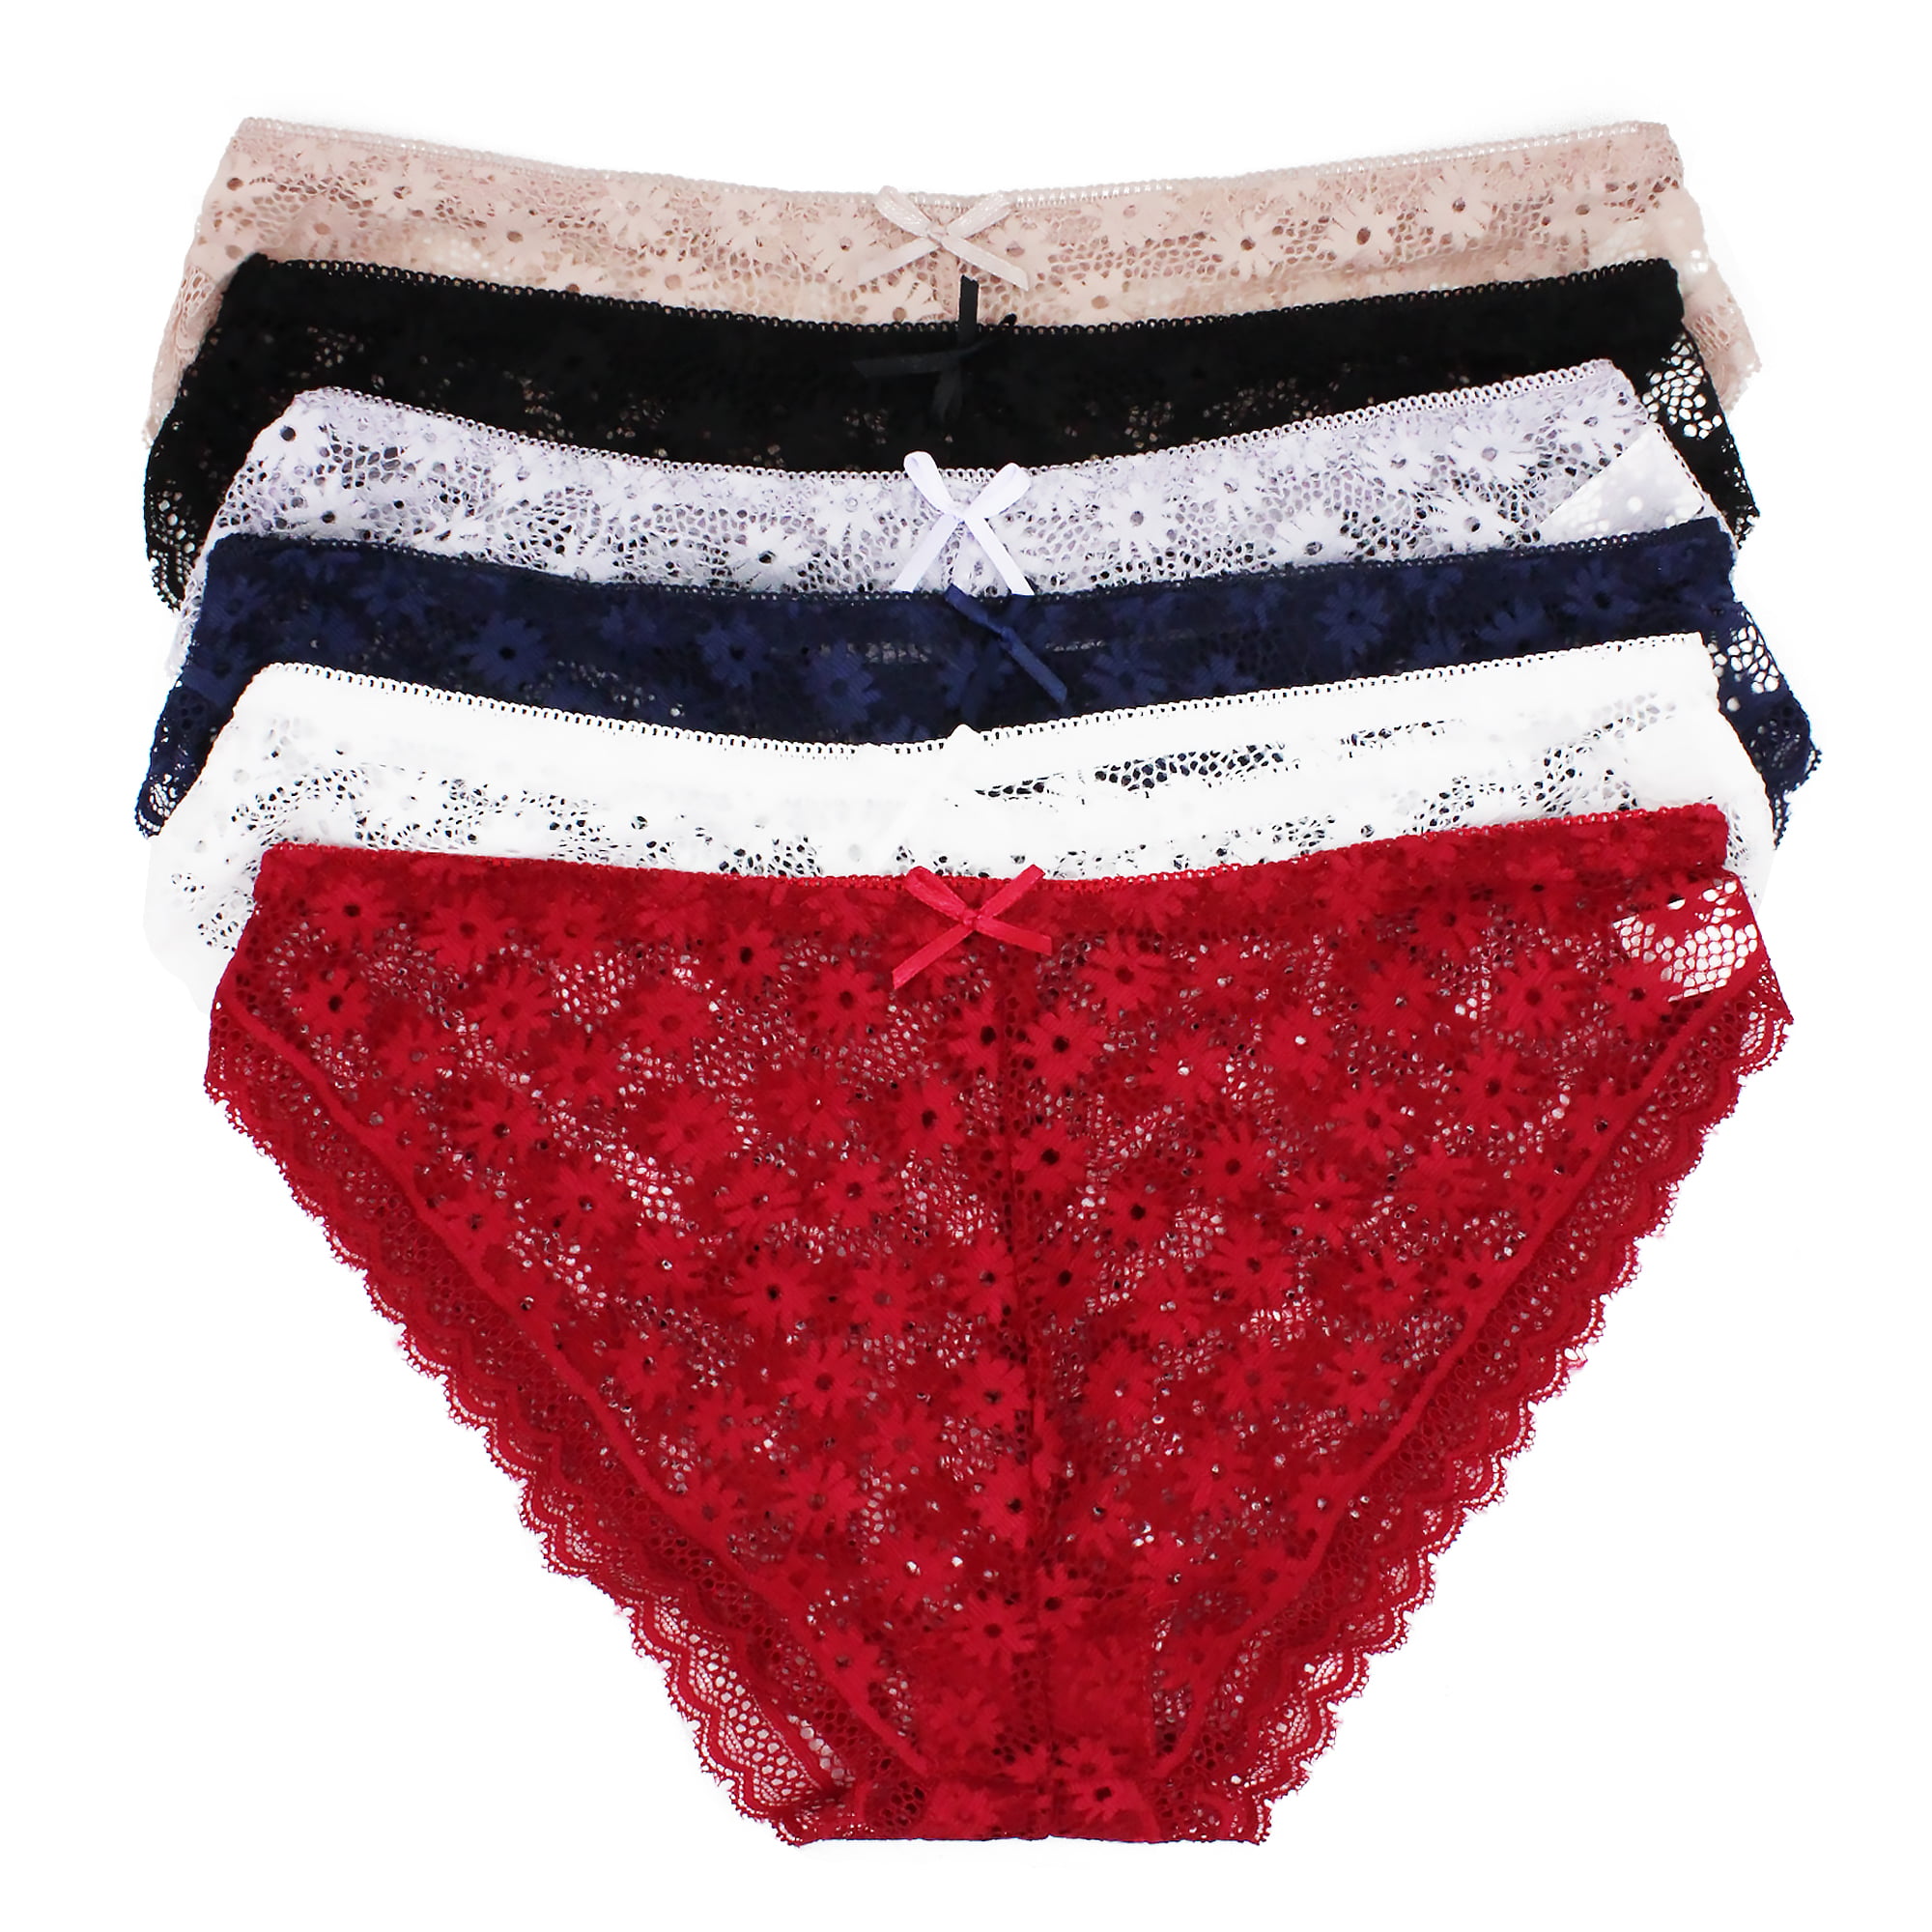 Femina Low Rise Cotton/Spandex Thong Panties Set of 6 Junior Size X-Large 